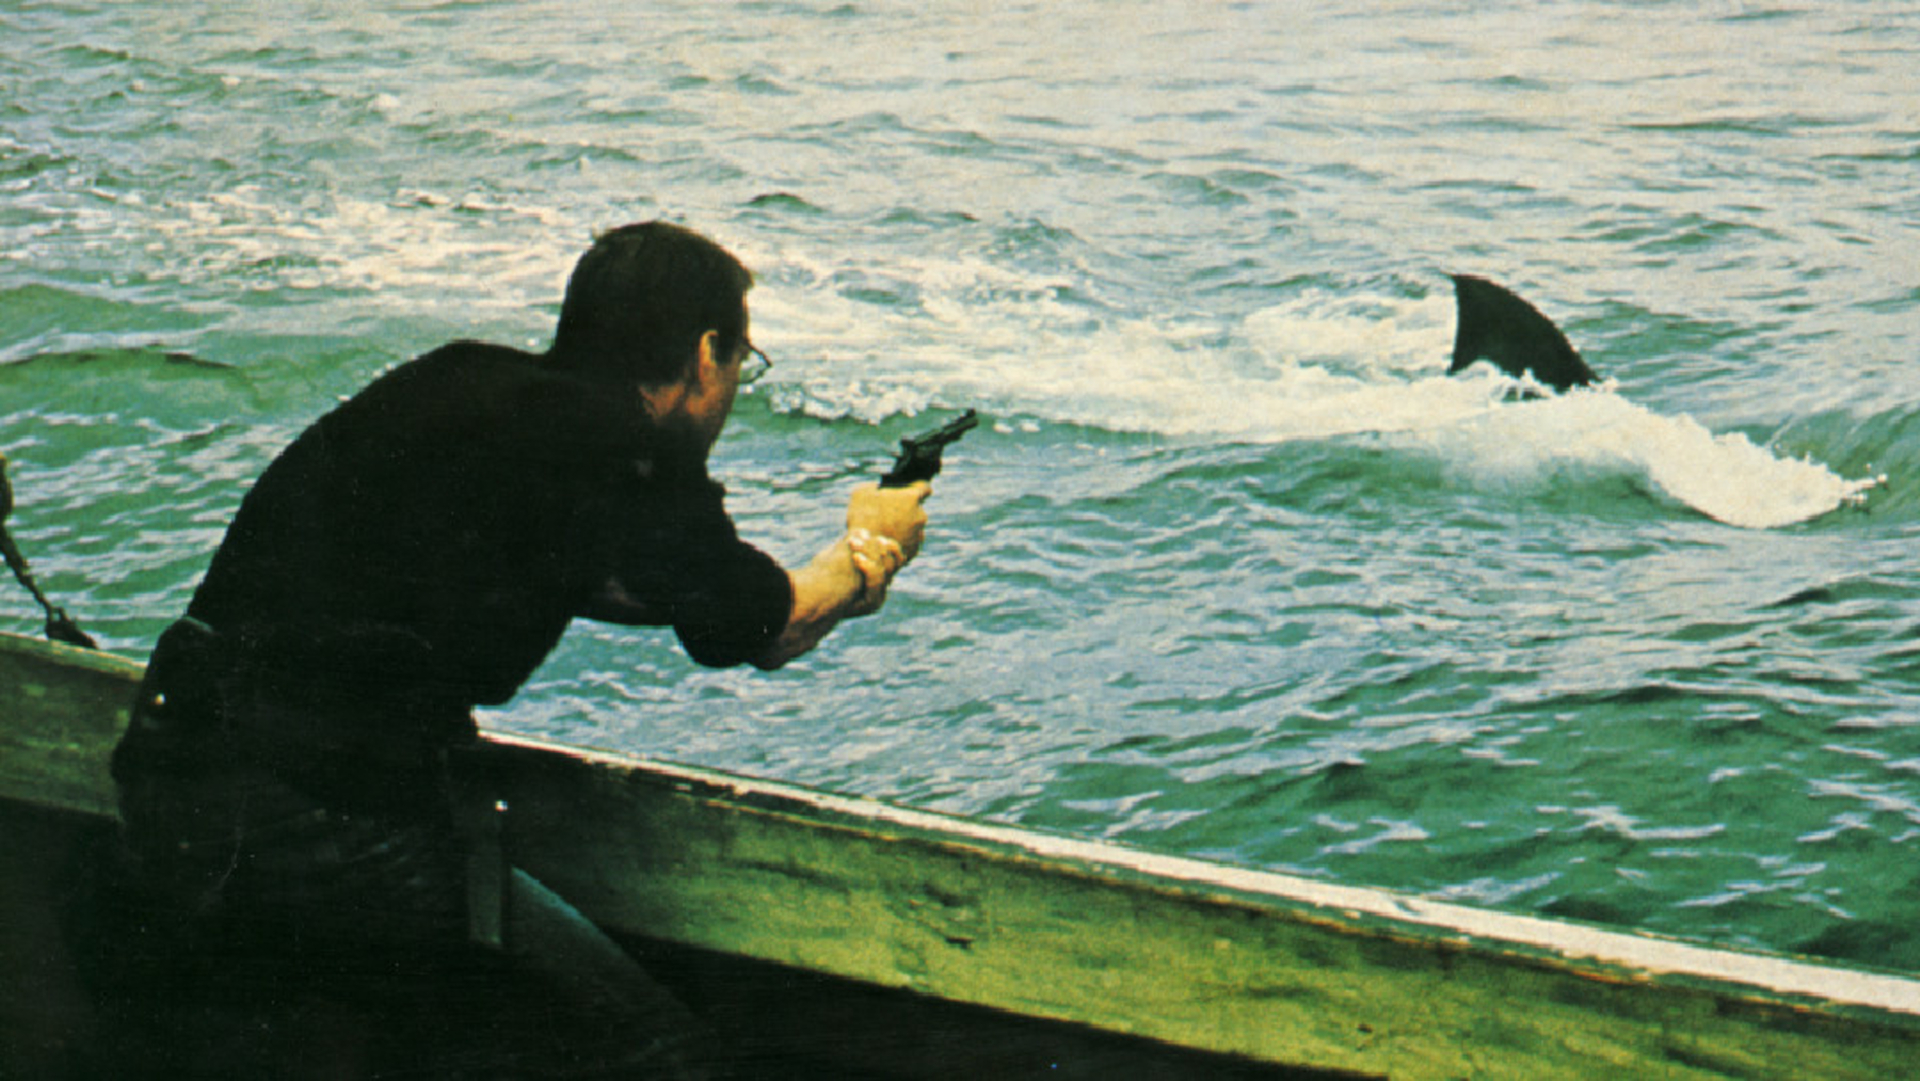 Still aus JAWS: Der Protagonist steht auf einem Boot im Meer und zielt mit einer Waffe auf die Rückenflosse des großen weißen Hais.